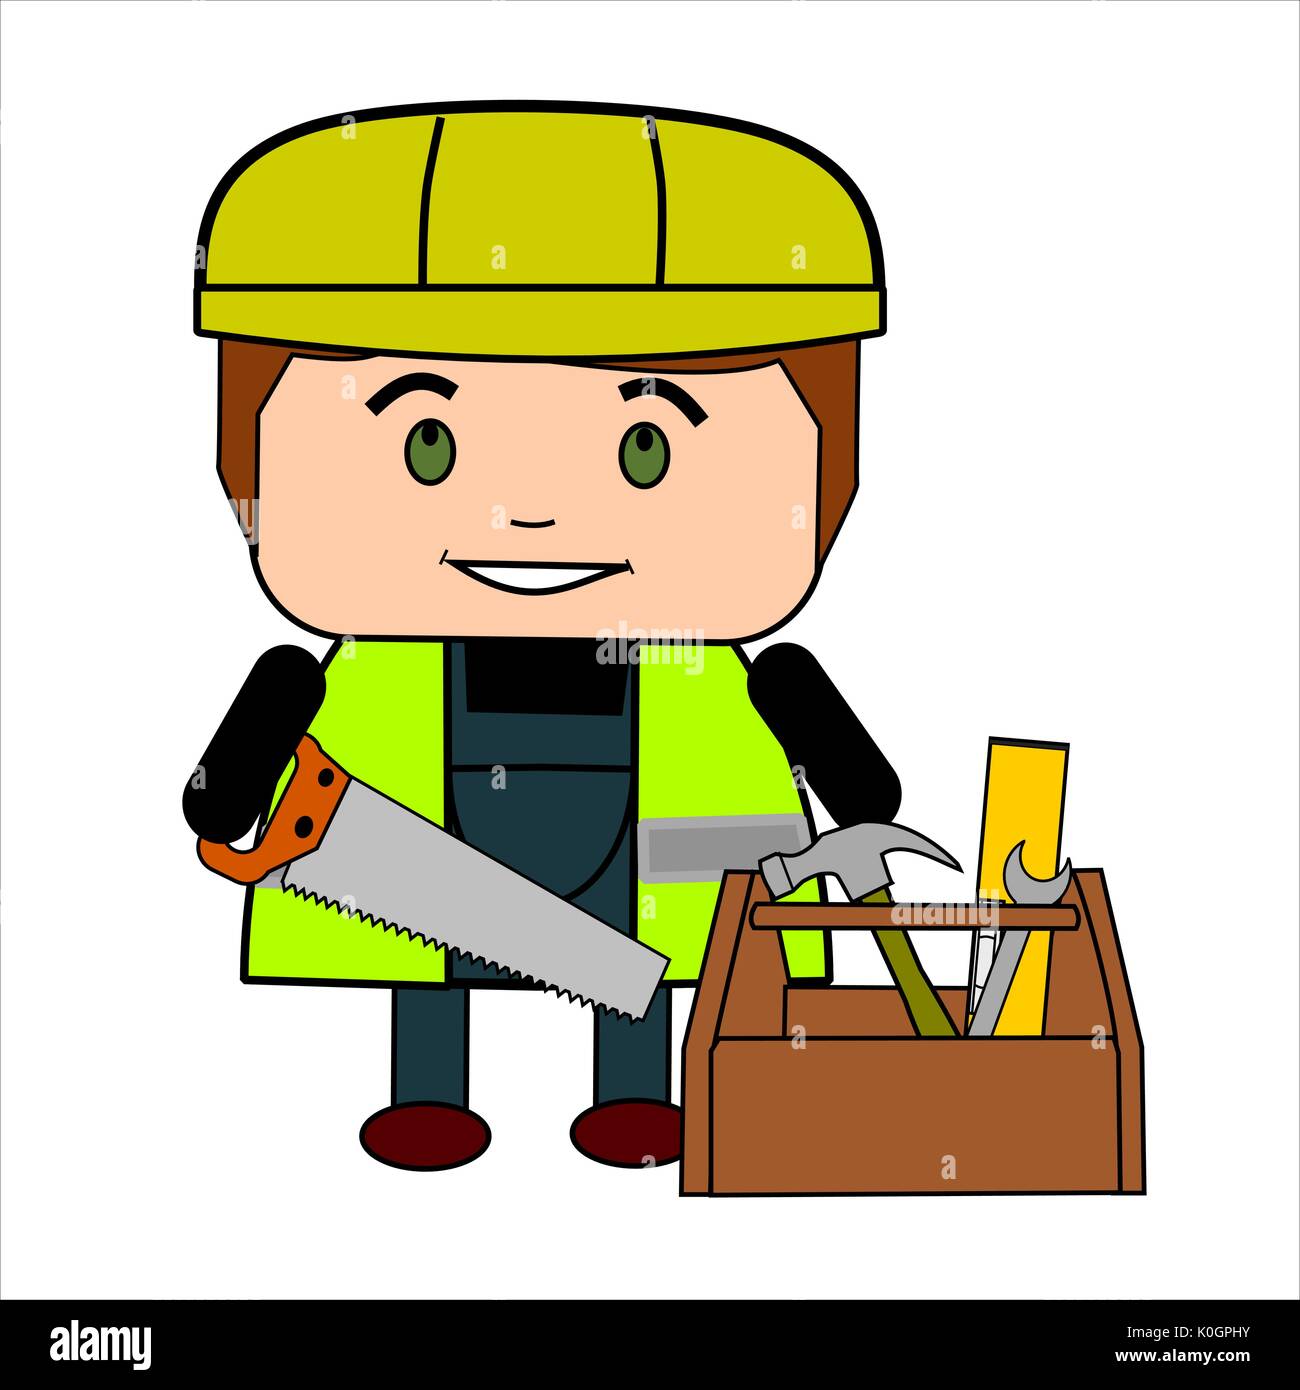 Spaß Cartoon männlichen Builder oder Arbeiter mit Säge, Toolbox, gut sichtbare Weste und Helm. Stock Vektor